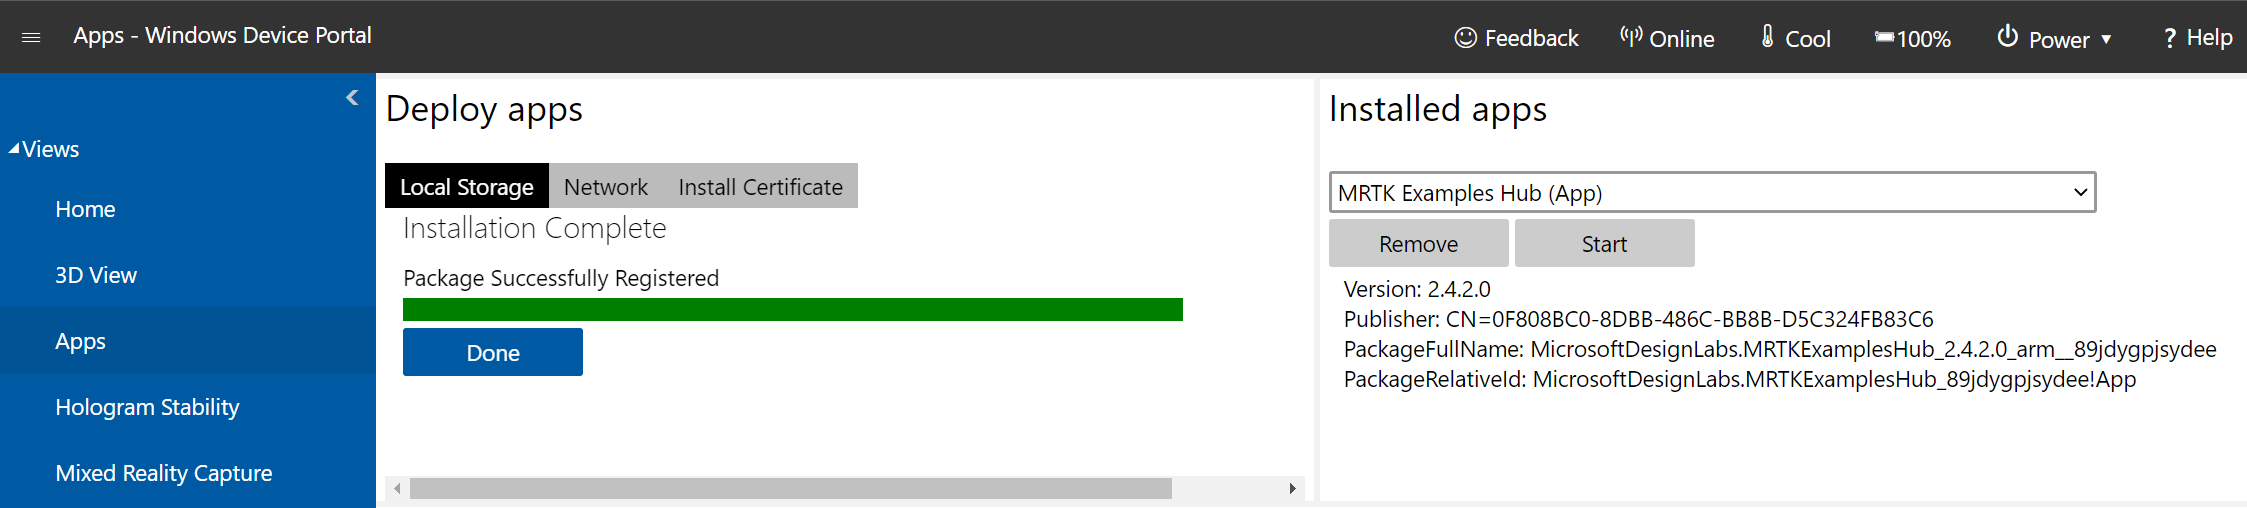 Captura de pantalla de la página del administrador de aplicaciones abierta en el Portal de dispositivos Windows con la instalación completada correctamente